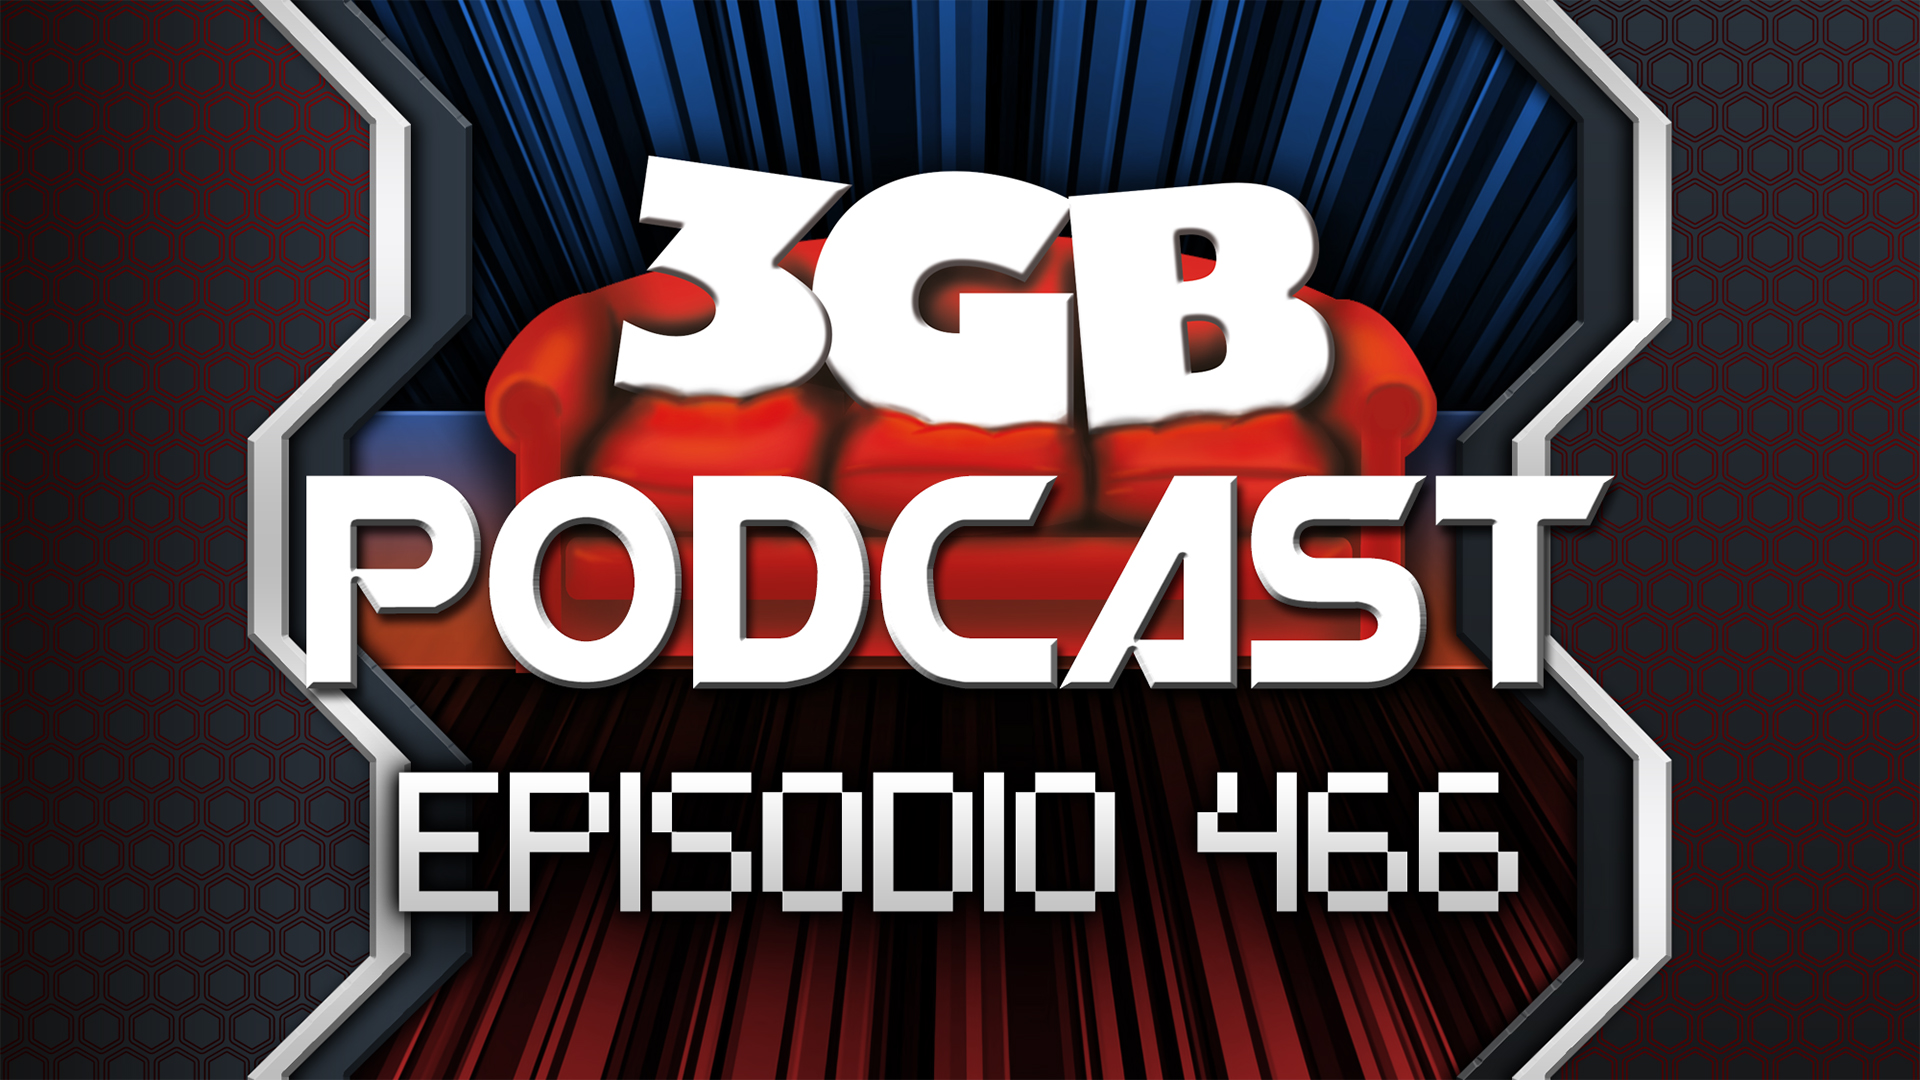 Podcast: Episodio 466, Previos en Tiempos de Pandemia